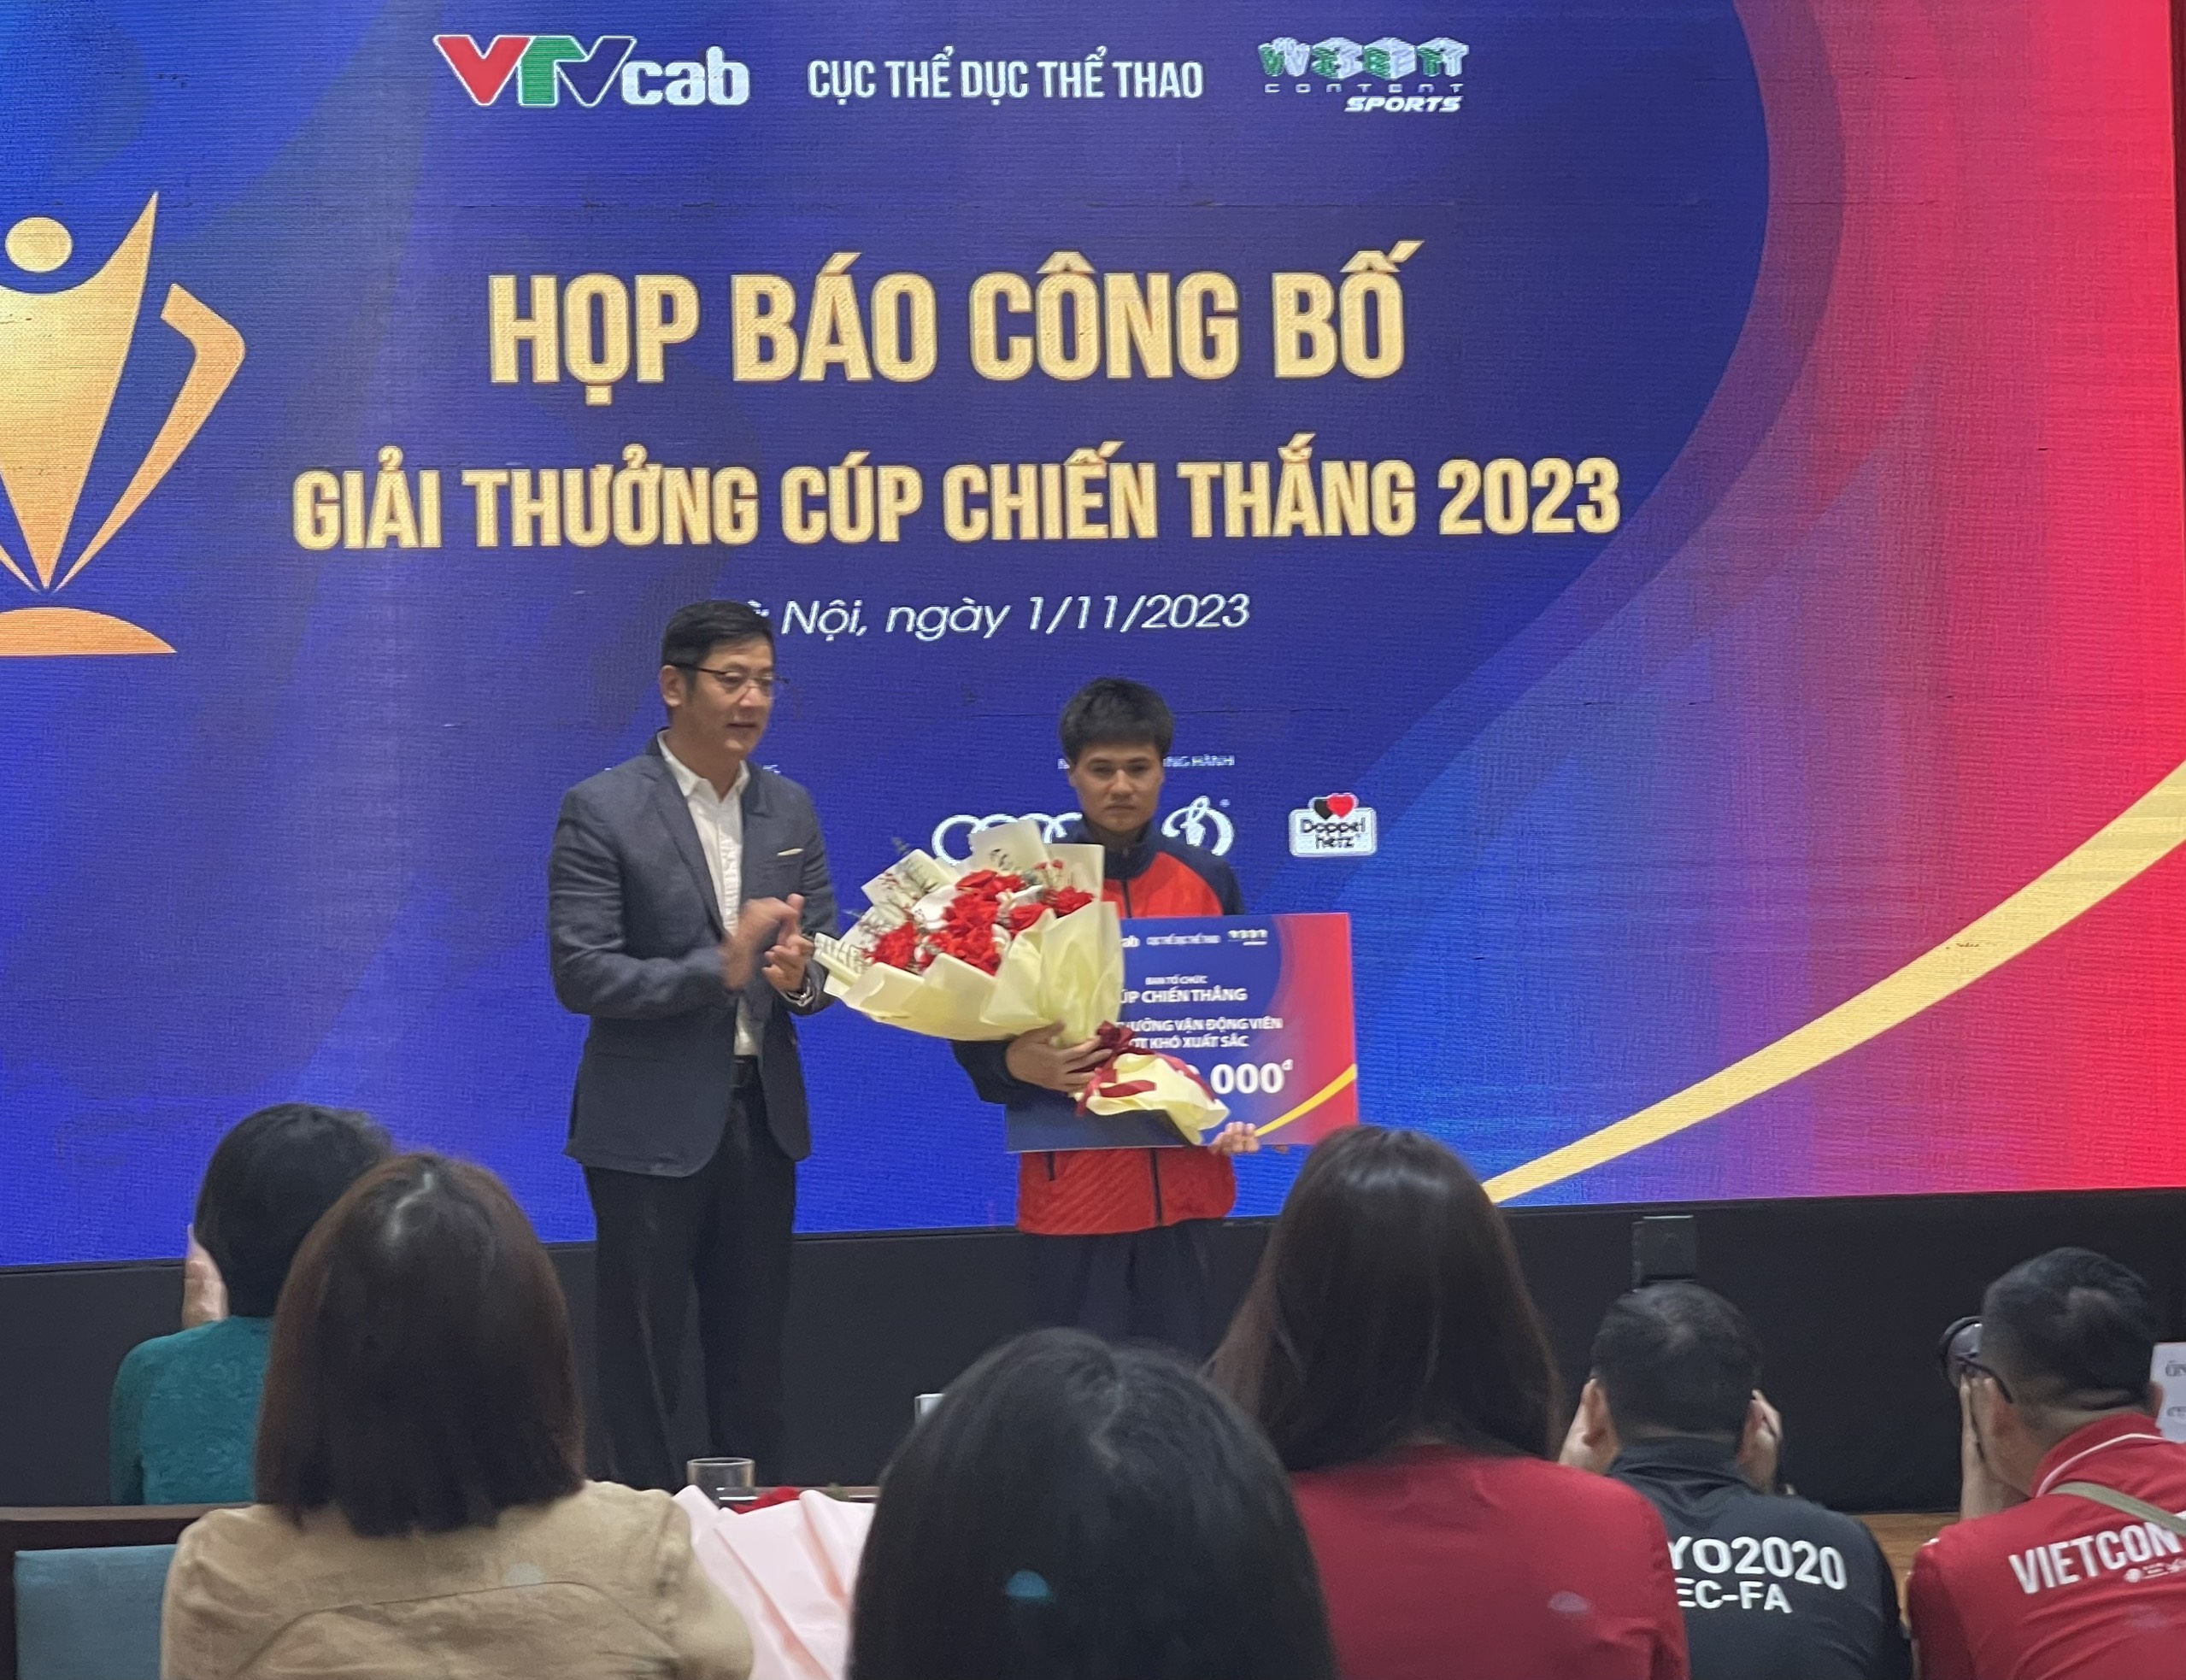 Khởi động bình chọn Cúp Chiến thắng 2023, tôn vinh các tập thể, cá nhân xuất sắc của thể thao Việt Nam ảnh 3